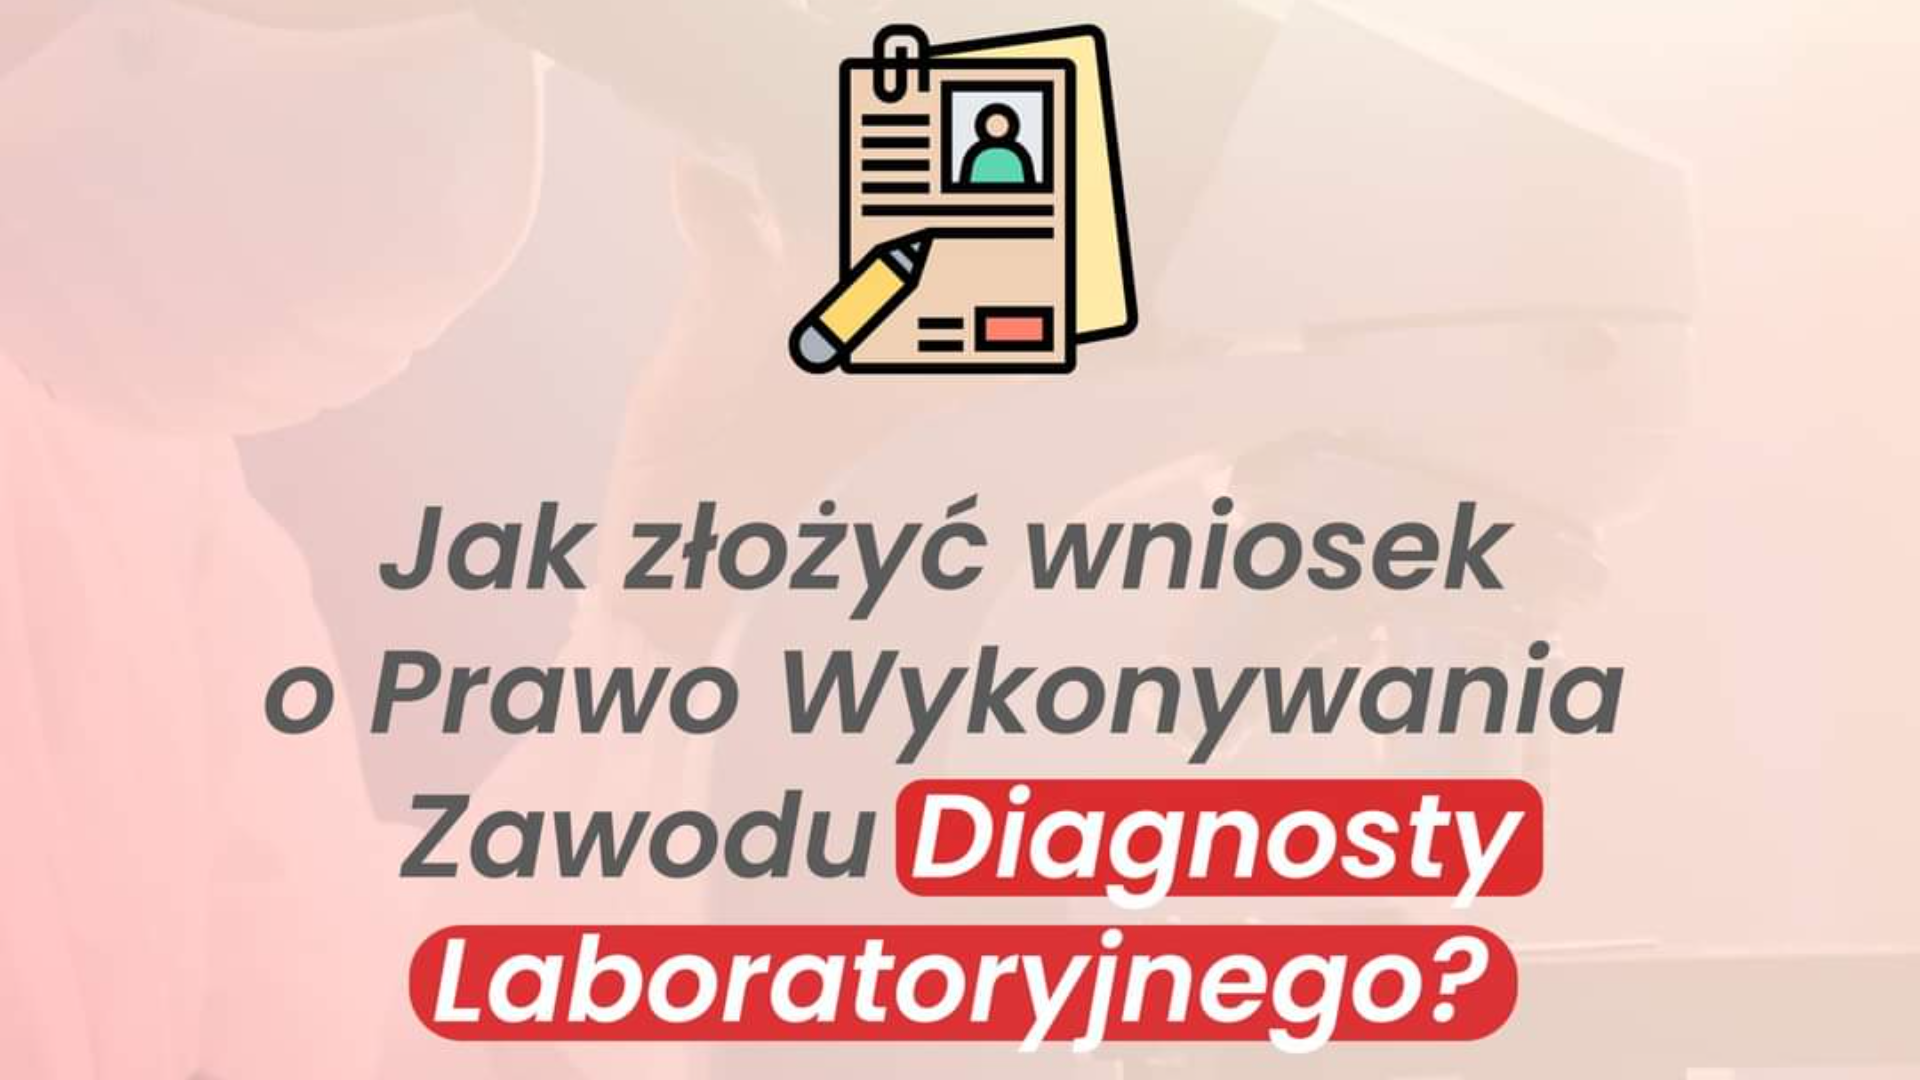 Aby złożyć wniosek o przyznanie Prawa Wykonywania Zawodu Diagnosty Laboratoryjnego (PWZDL) należy przesłać następujące dokumenty: